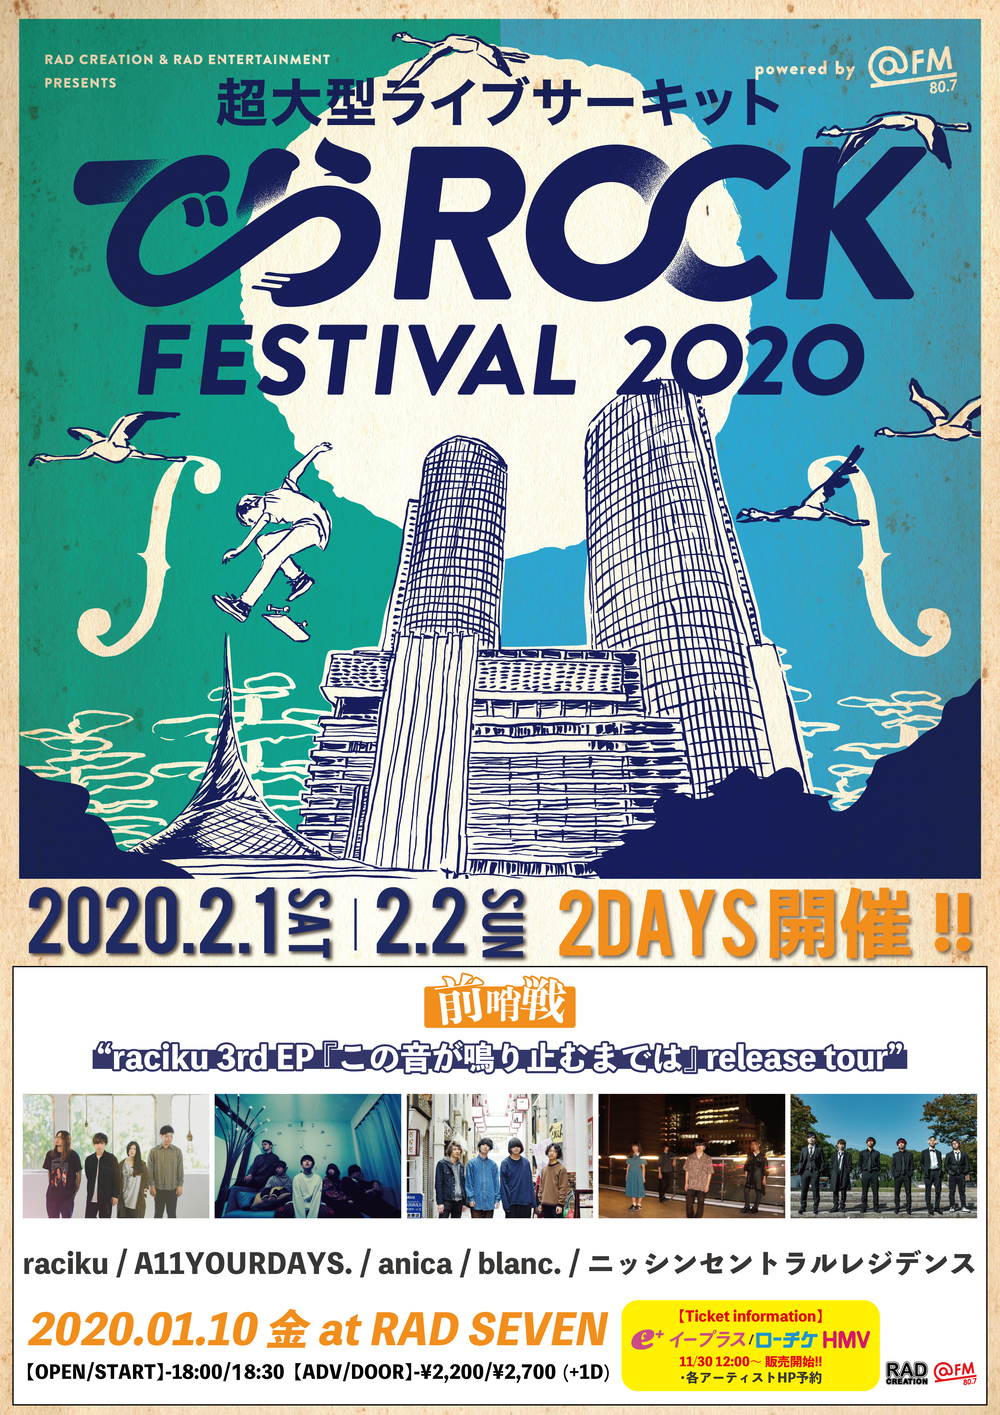 でらロックフェスティバル 前哨戦 ”raciku raciku 3rd EP「この音が鳴り止むまでは」release tour"